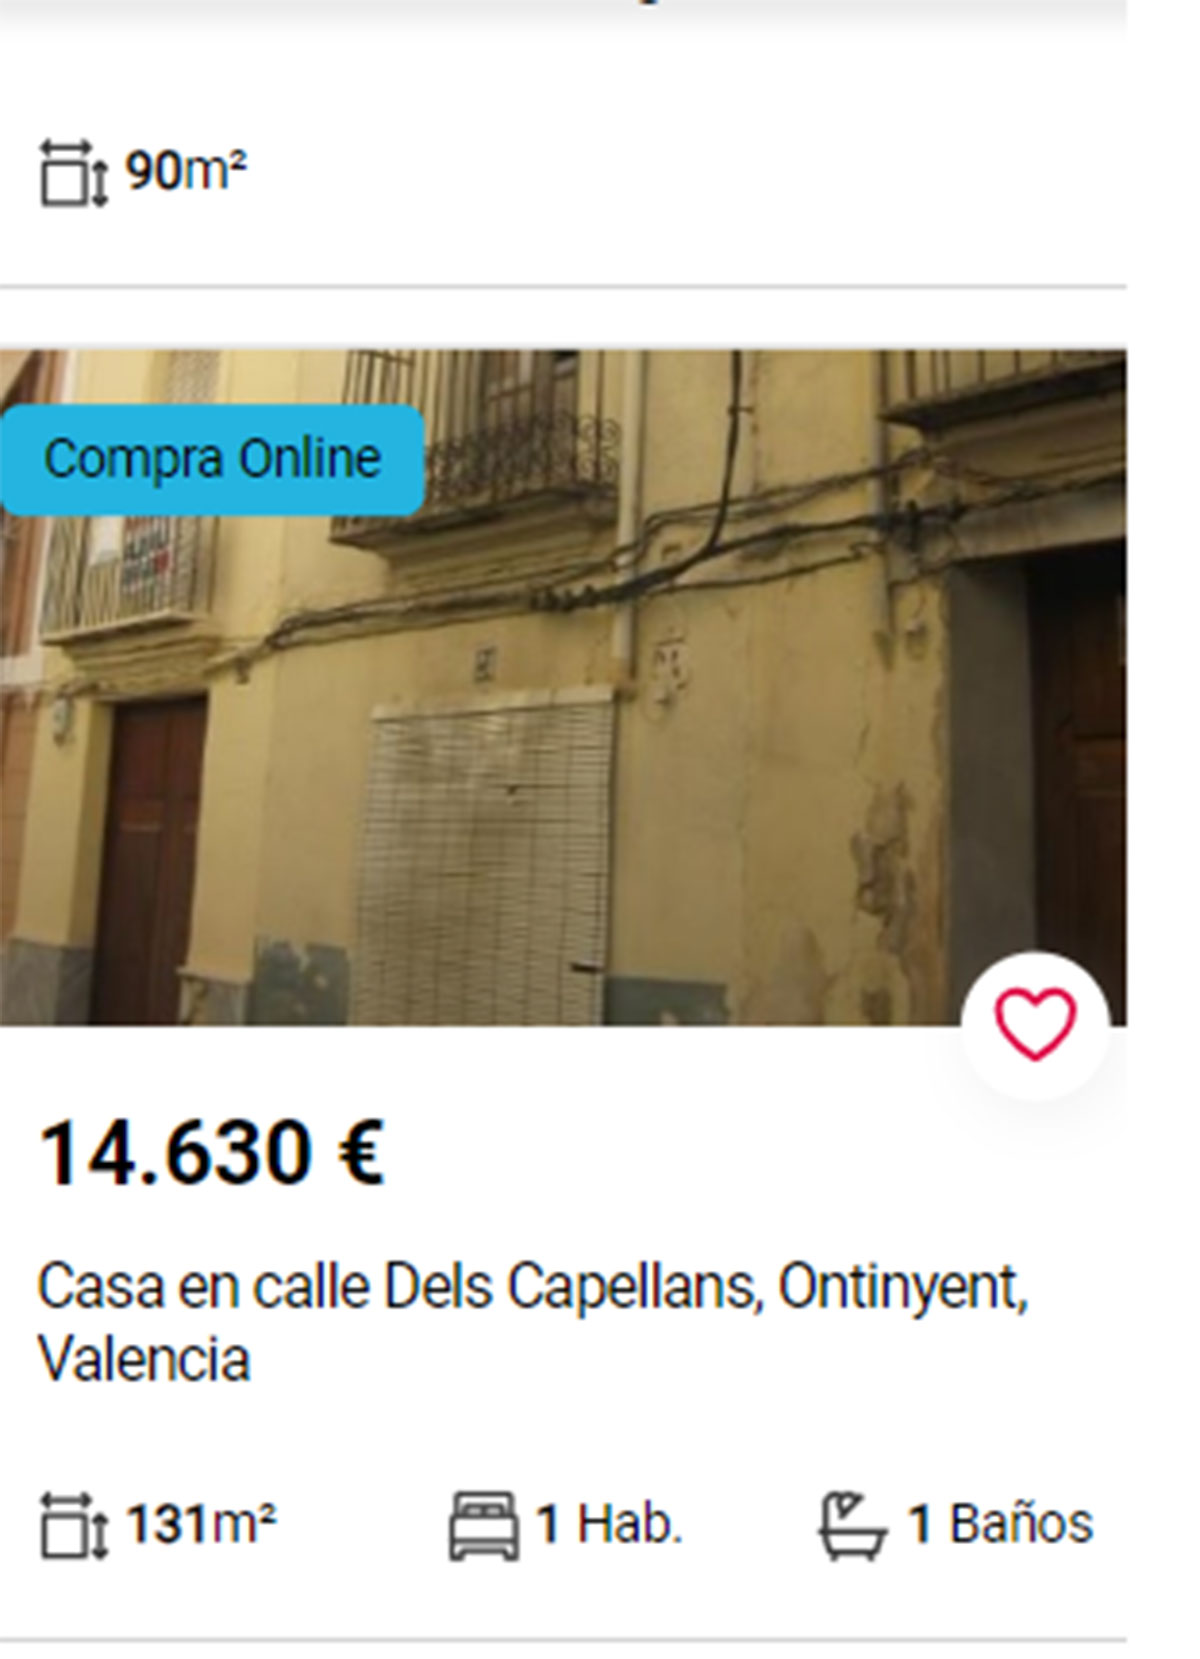 Piso en Valencia por 14.600 euros